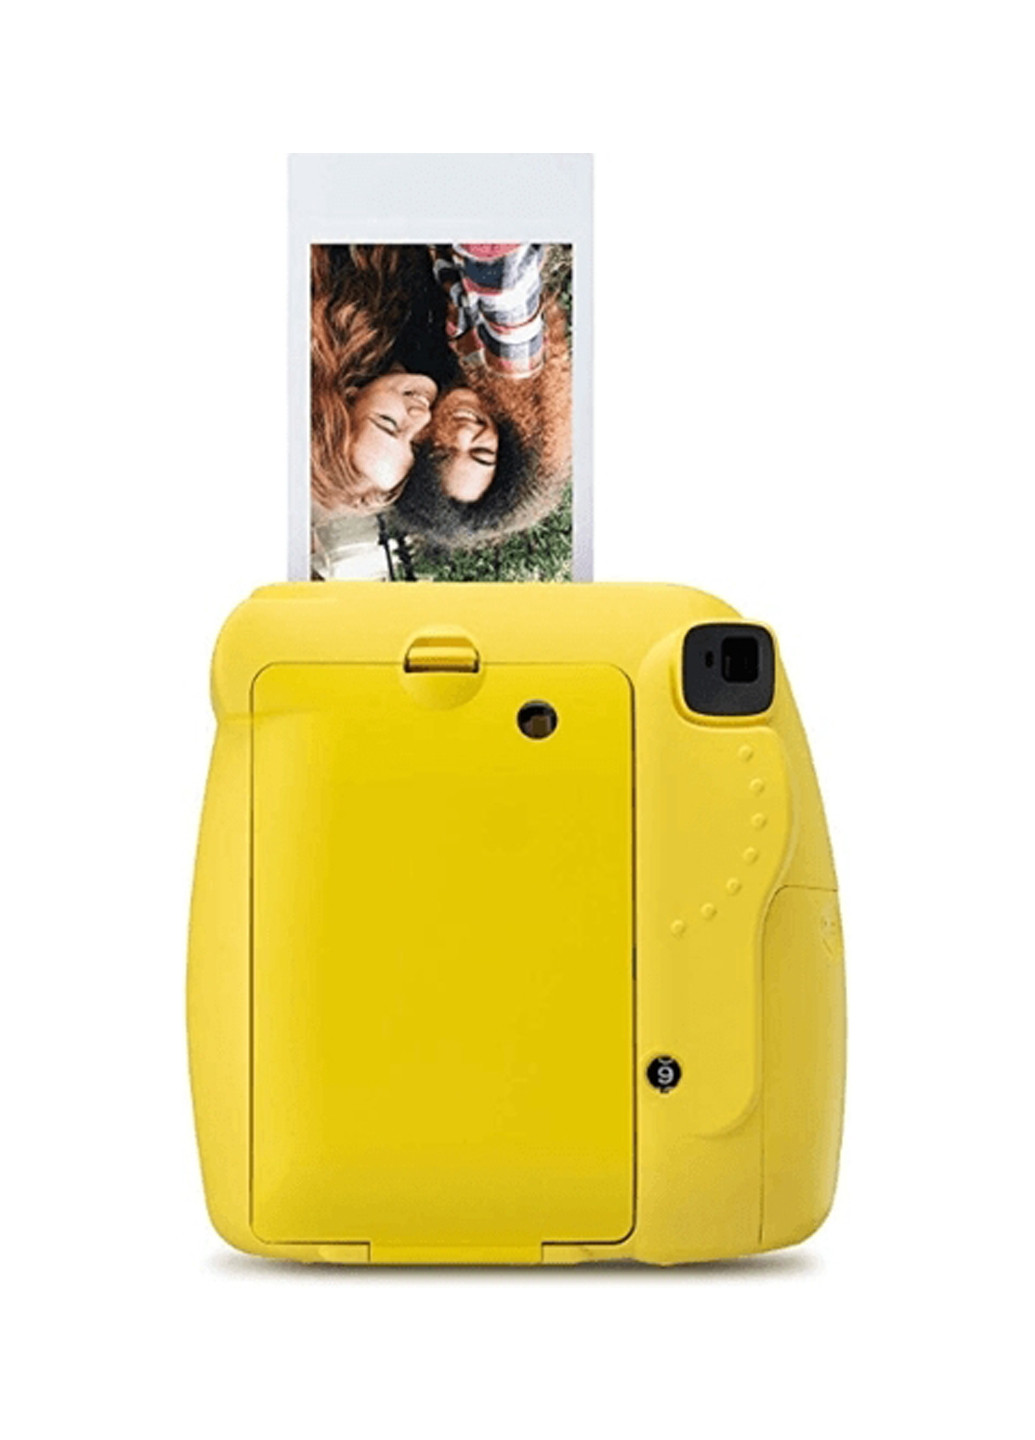 Фотокамера миттєвого друку INSTAX Mini 9 Yellow Fujifilm моментальной печати instax mini 9 yellow (151241178)